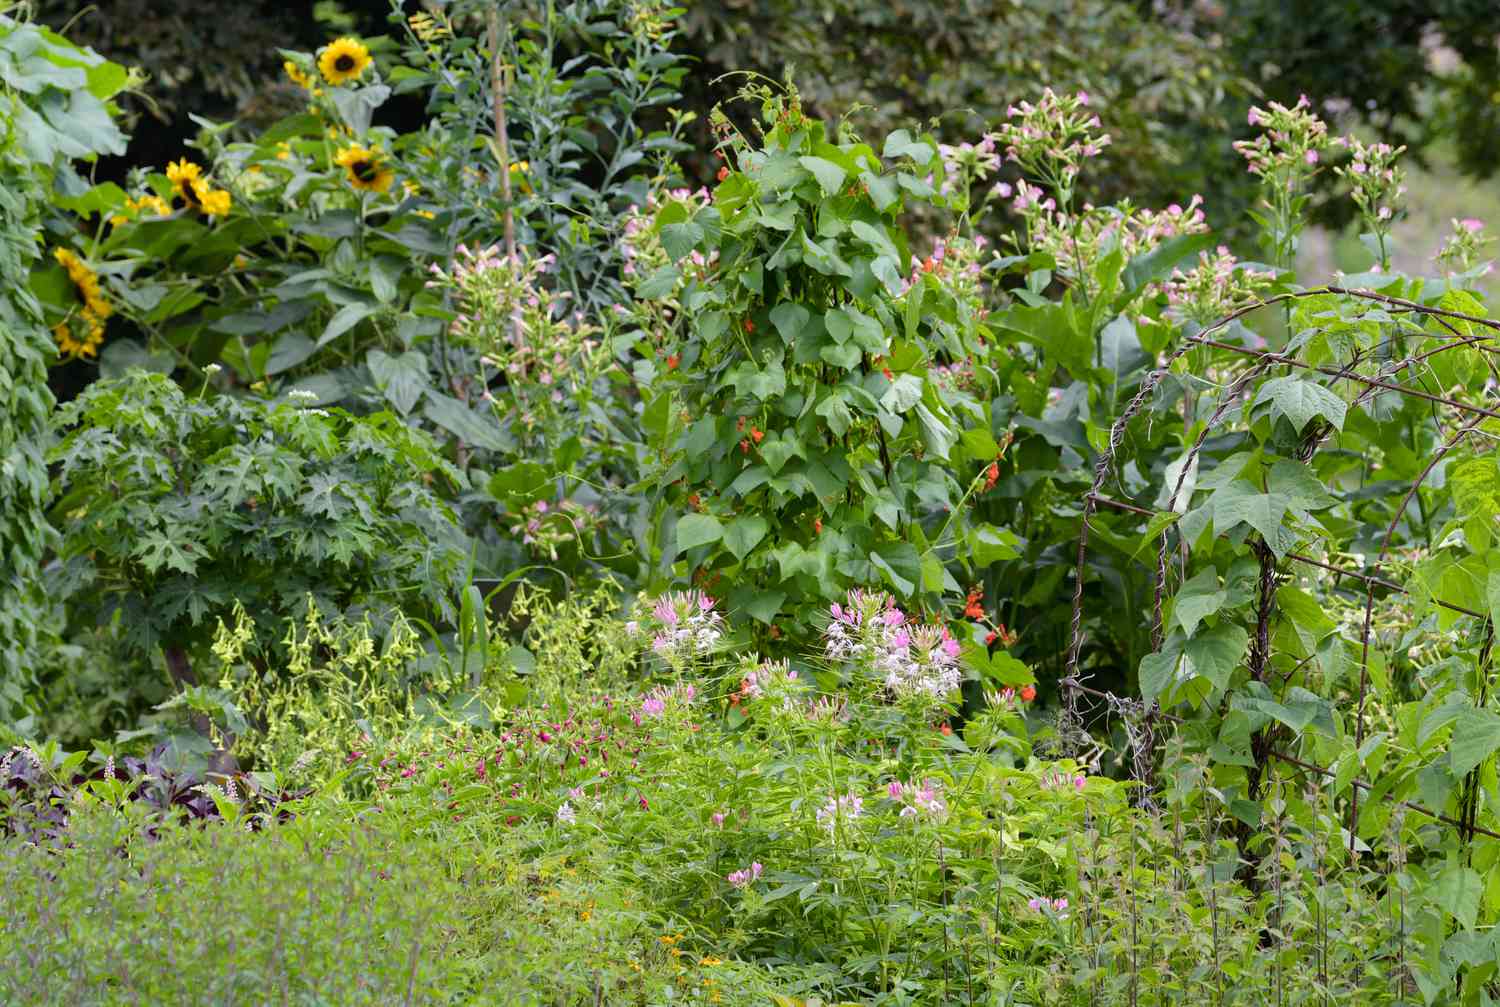 Cleome-Pflanze mit kleinen rosa und weißen Blüten im Vorgarten